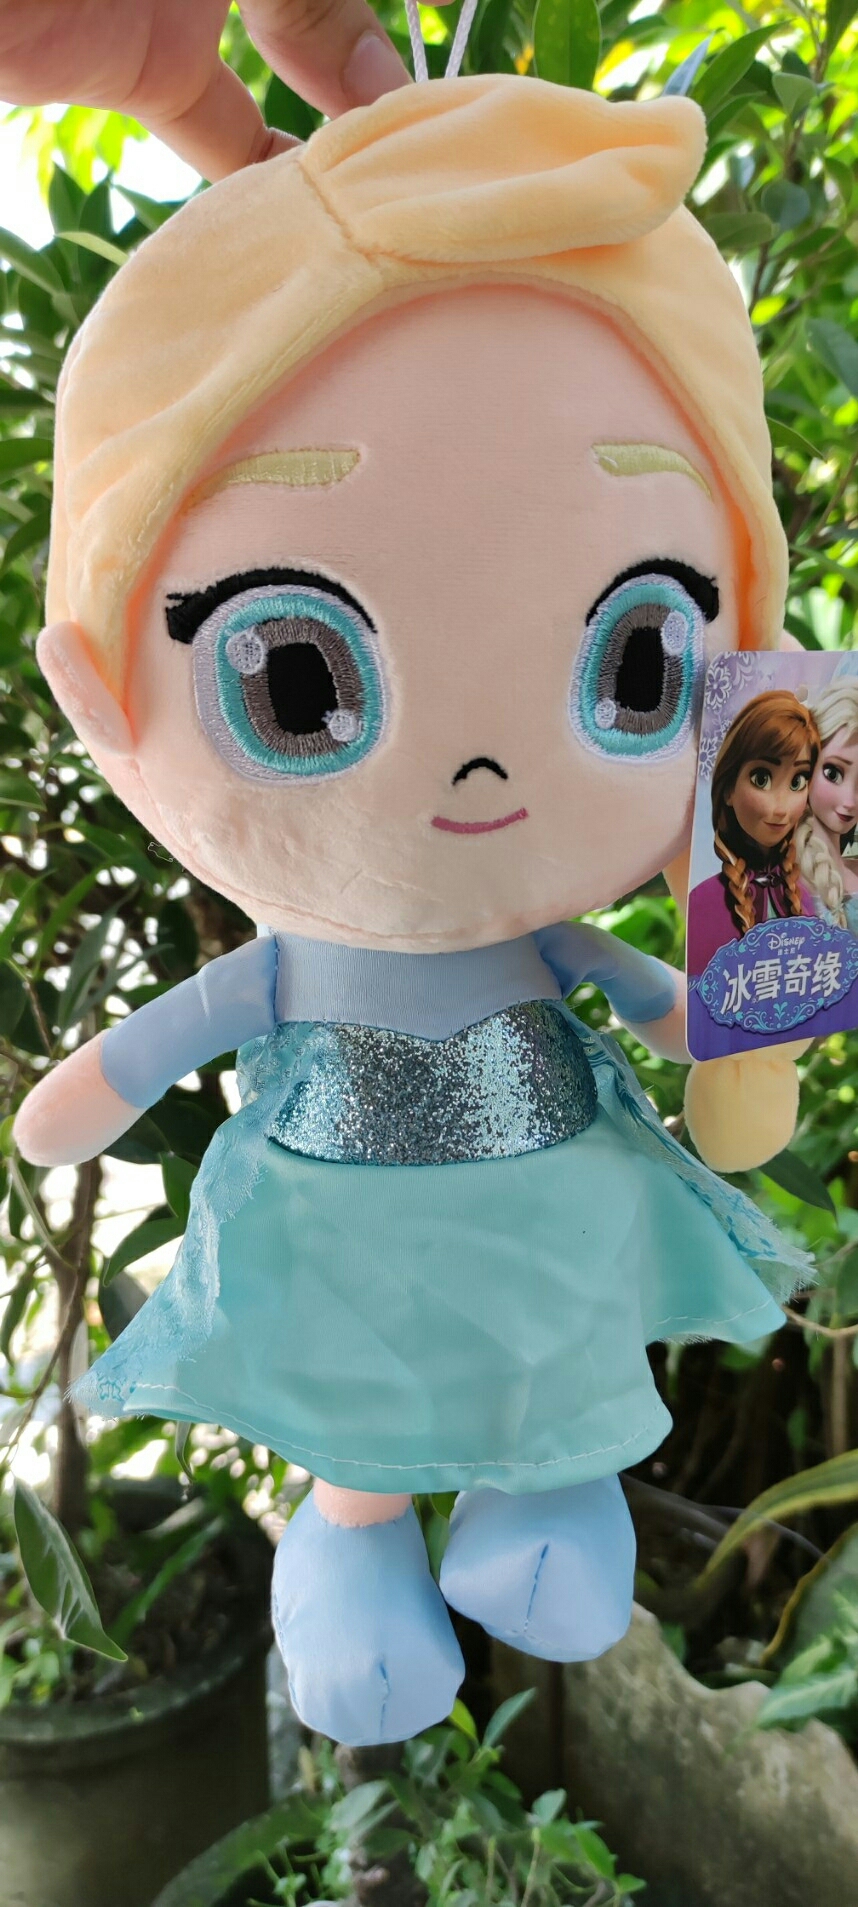 #ตุ๊กตาเจ้าหญิง Frozen Disney งานจริงน่ารักสุดๆ Neww มีให้เลือก อันนา เอลซ่า